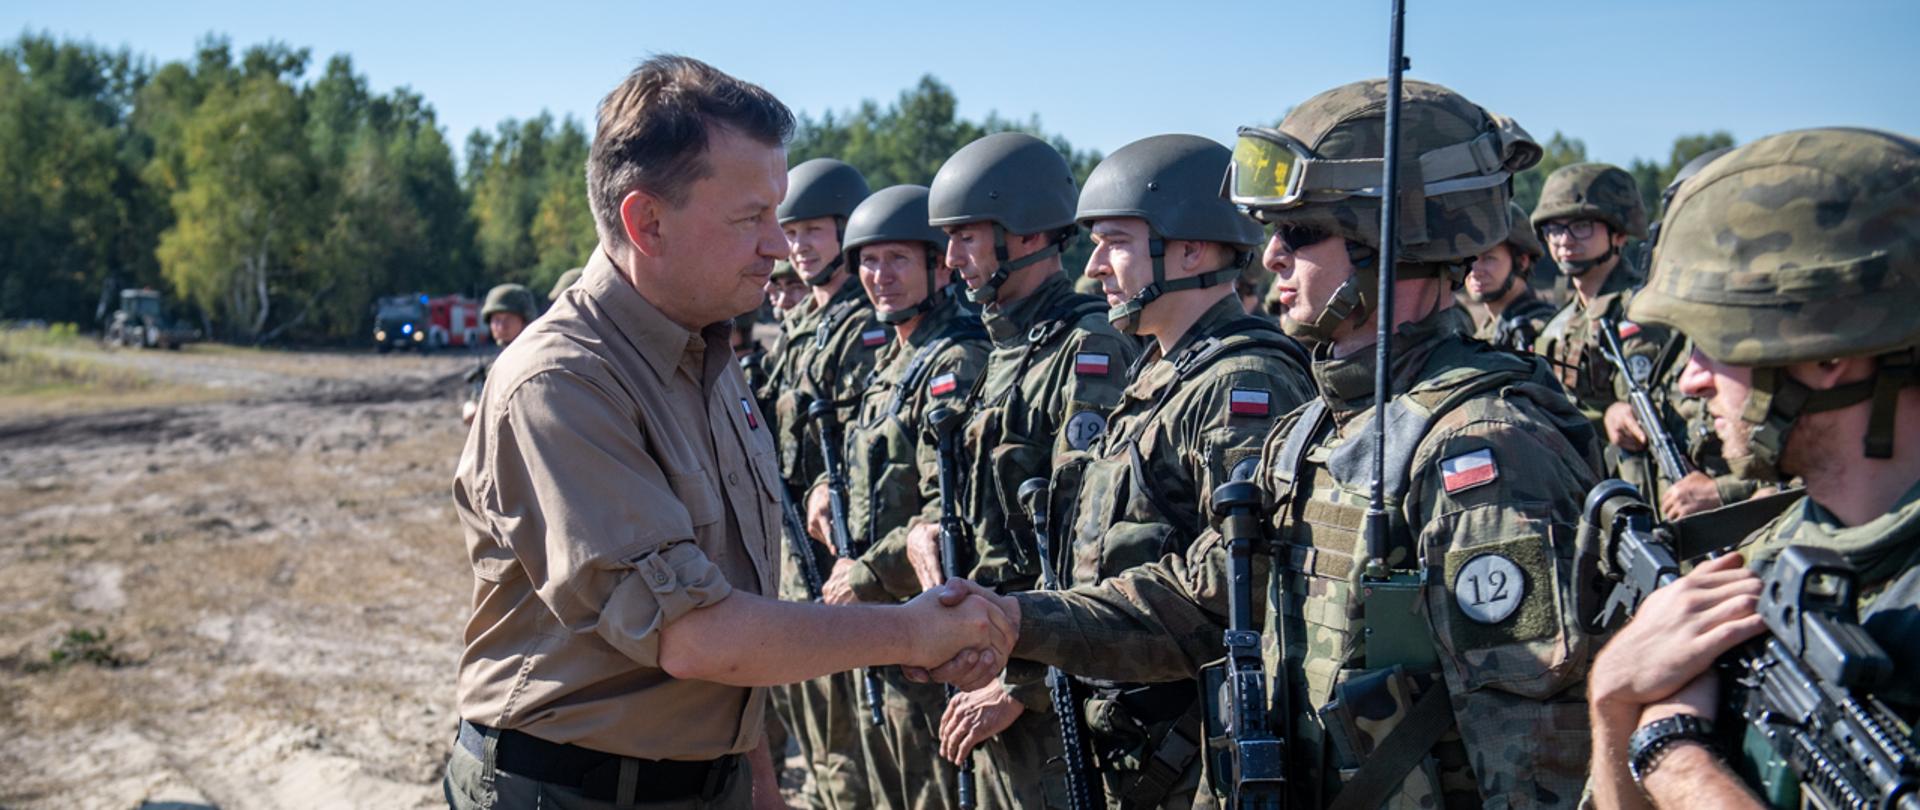 W piątek 10 września minister Mariusz Błaszczak na poligonie w Nowej Dębie spotkał się z żołnierzami 12 Szczecińskiej Dywizji Zmechanizowanej, którzy szkolą się w ramach ćwiczenia pk. Ryś-21. W ćwiczeniu uczestniczy ponad 4 tys. żołnierzy oraz ponad 1 tys. jednostek sprzętu wojskowego.